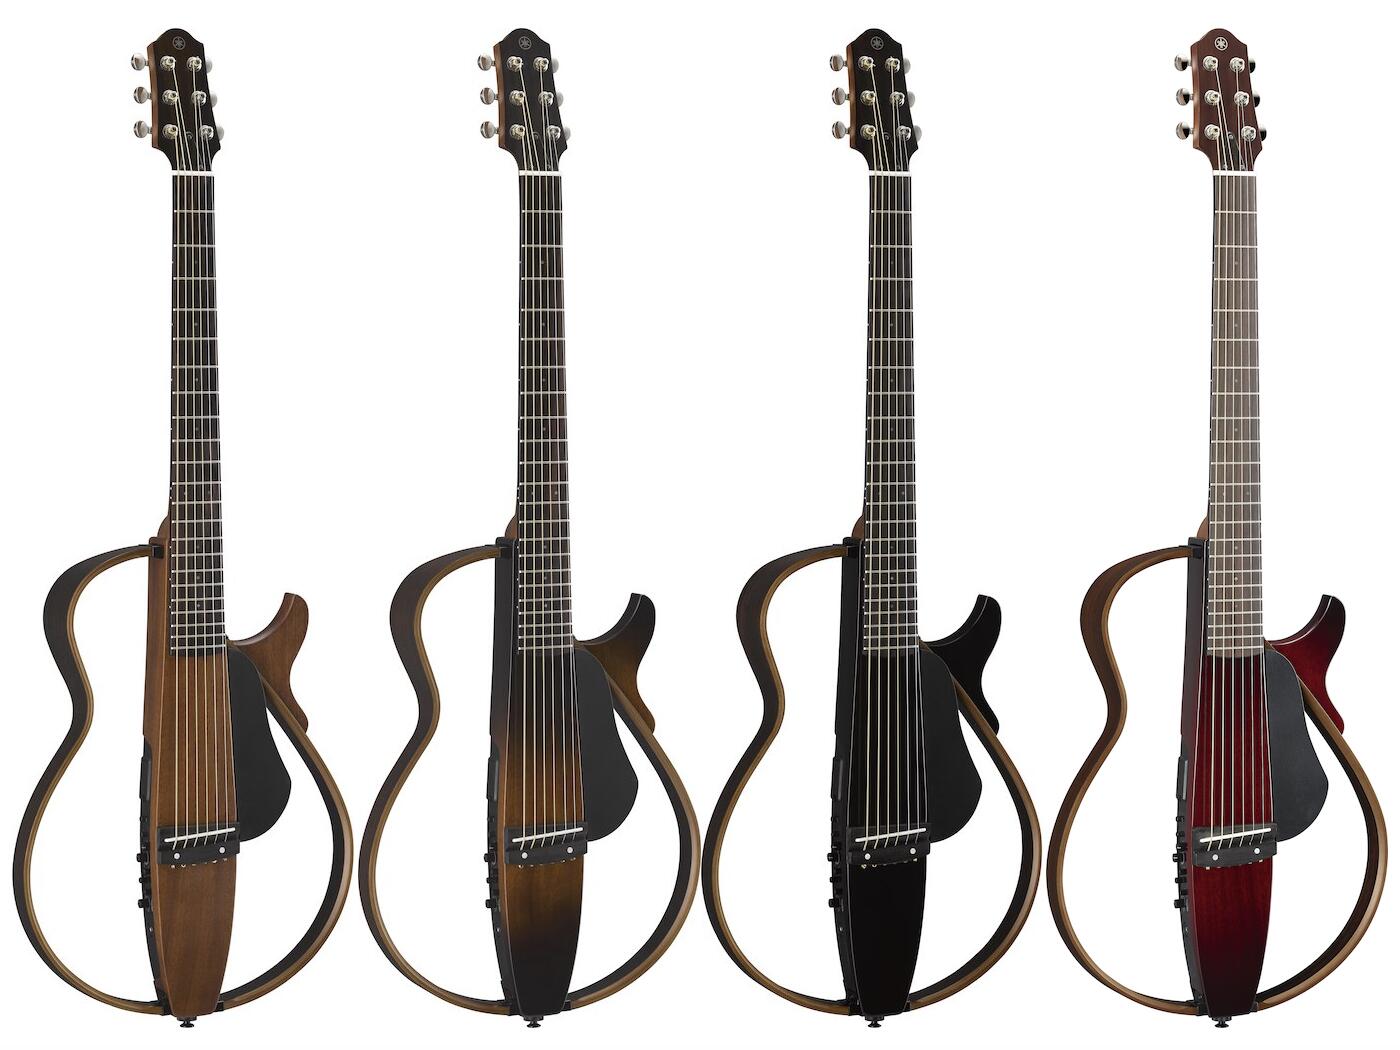 楽天市場 お取り寄せ商品 Yamaha Slg0s サイレントギター アコースティック アコギ ヤマハ Natural ナチュラル Tbs バースト Black ブラック Red レッド 納期未定 Craft House